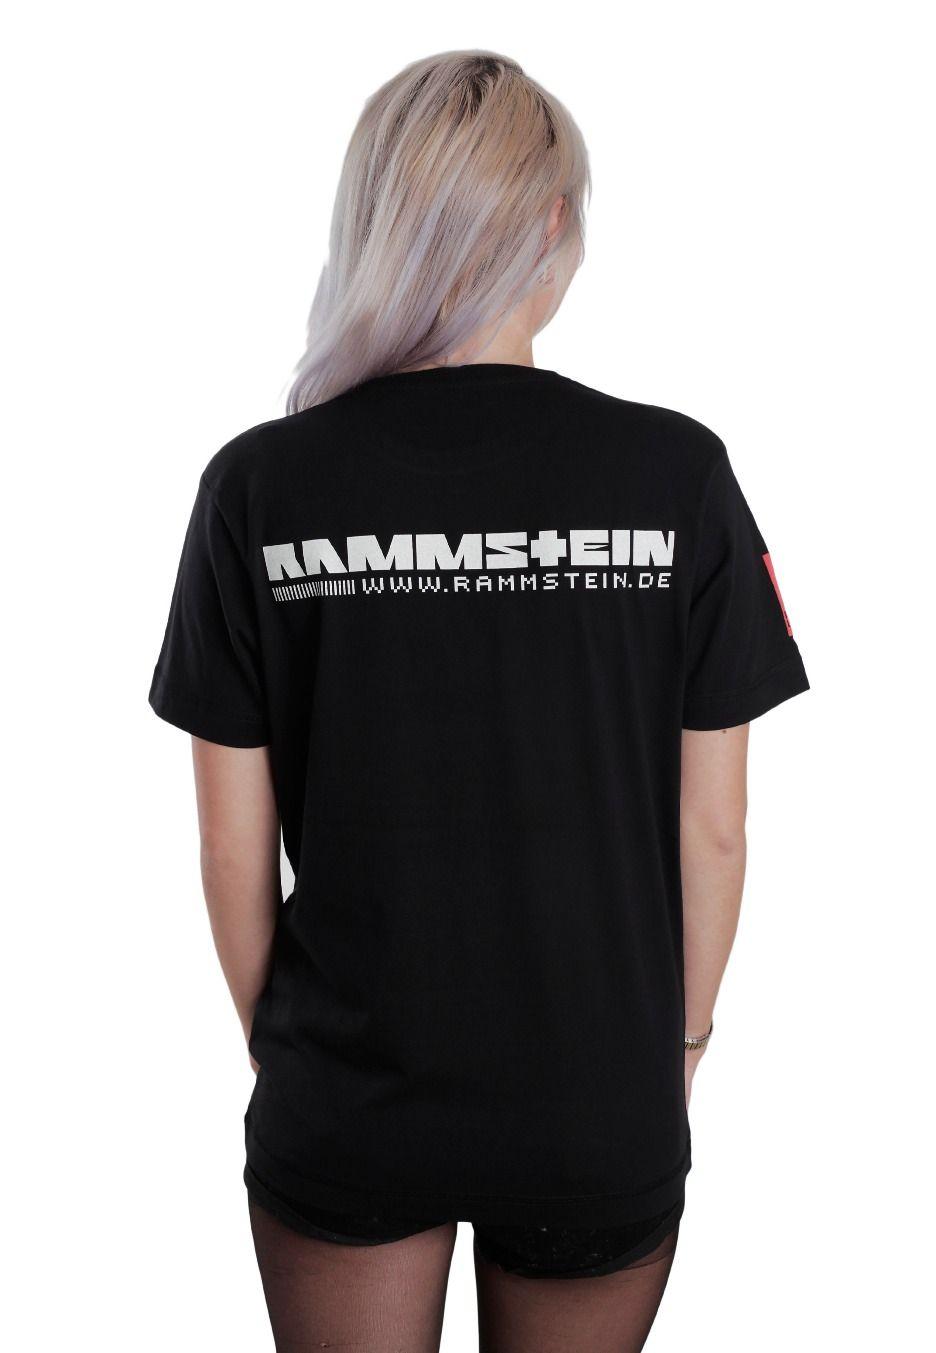 Rammstein Logo - Rammstein - Logo - T-Shirt - Official Crossover Merchandise Shop ...